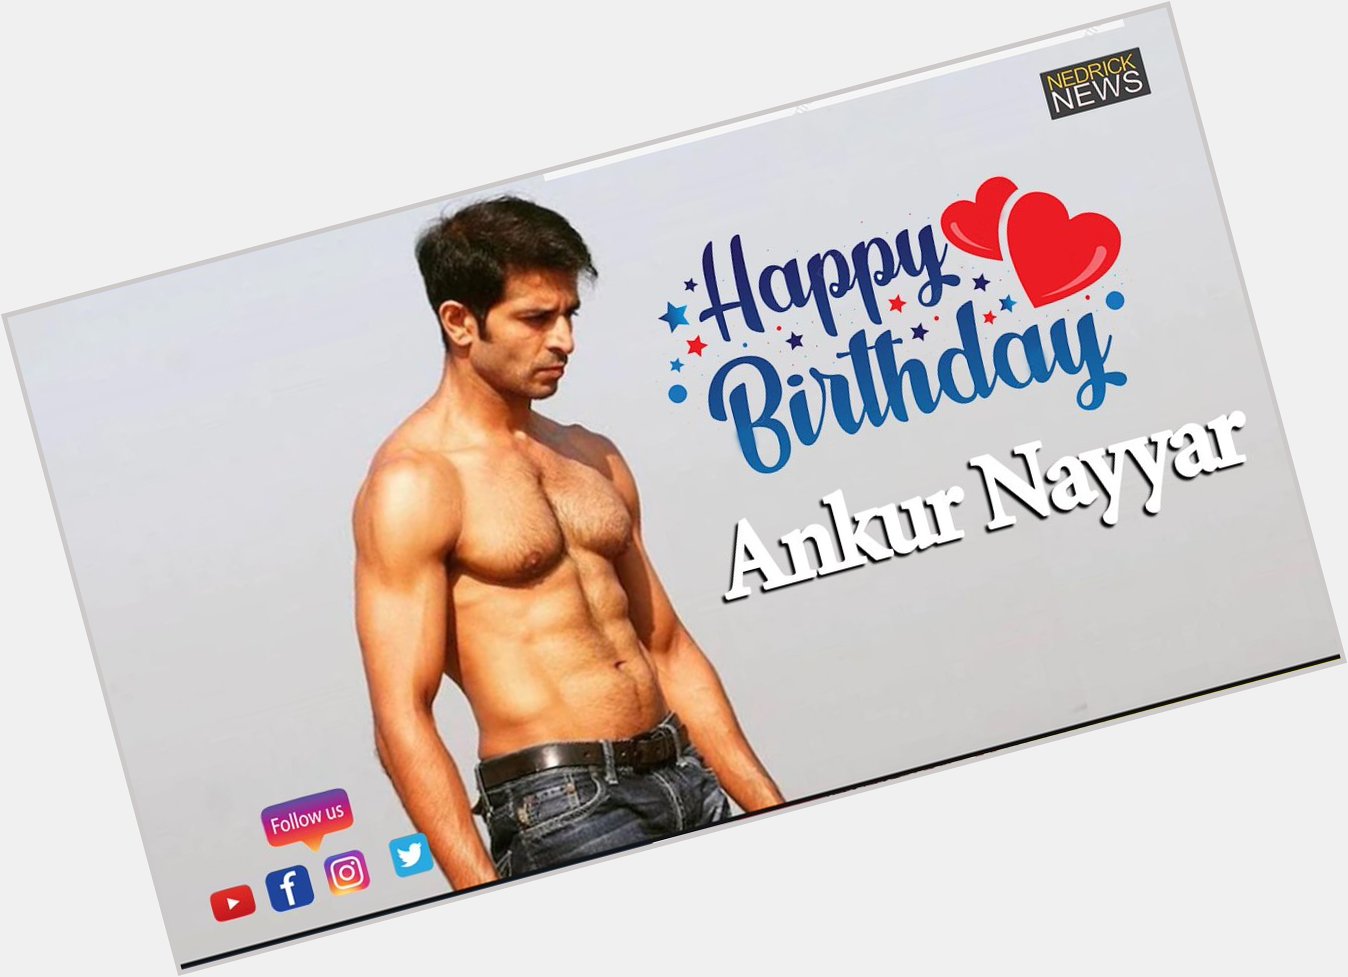 Happy Birthday Ankur Nayyar!    